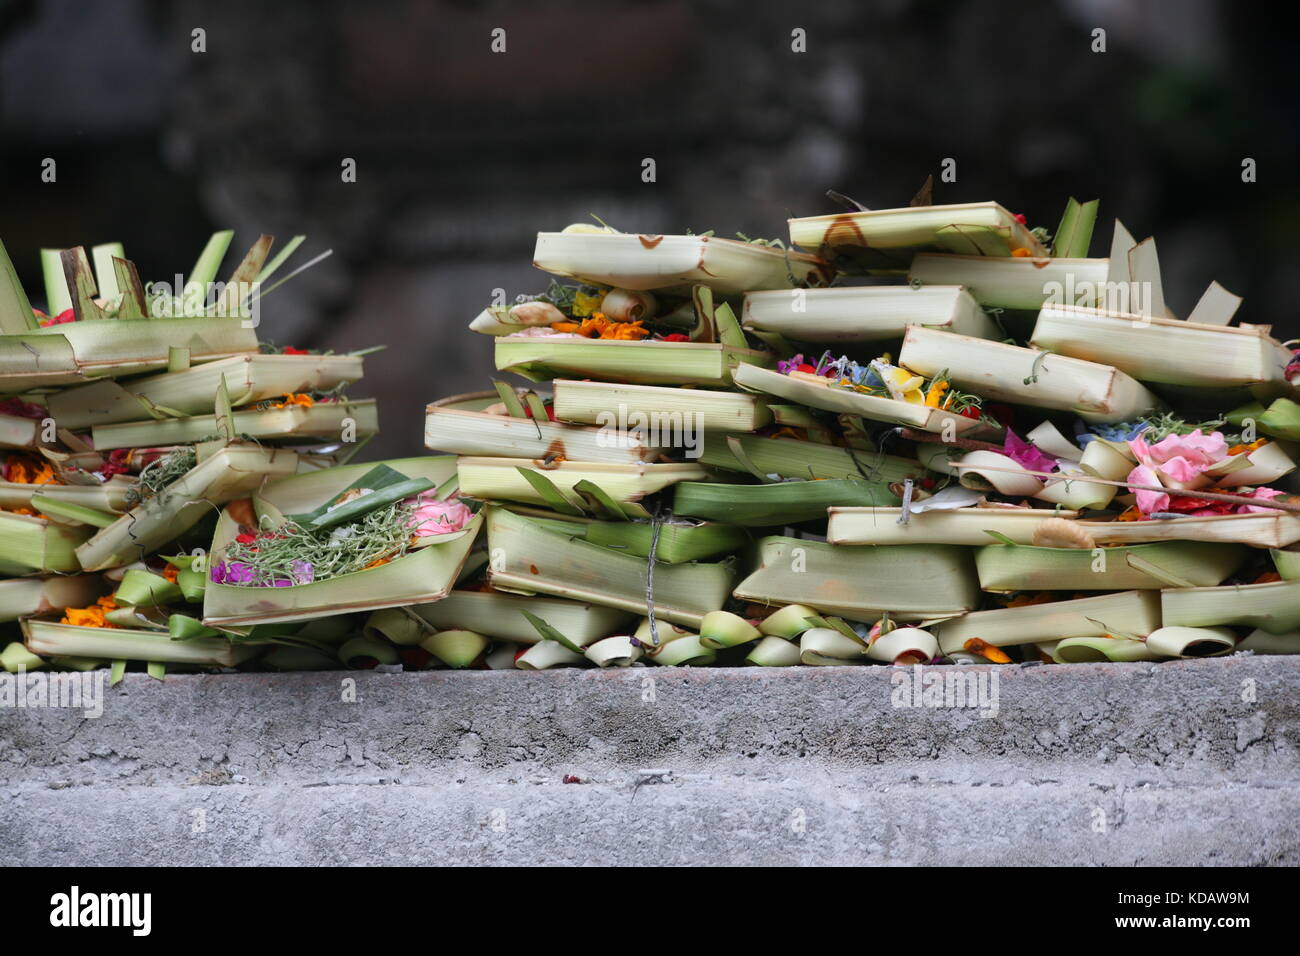 Balinesische Opfergaben - kulturelle Tradition auf Bali - Balinese sacrifices - cultural tradition in Bali Stock Photo